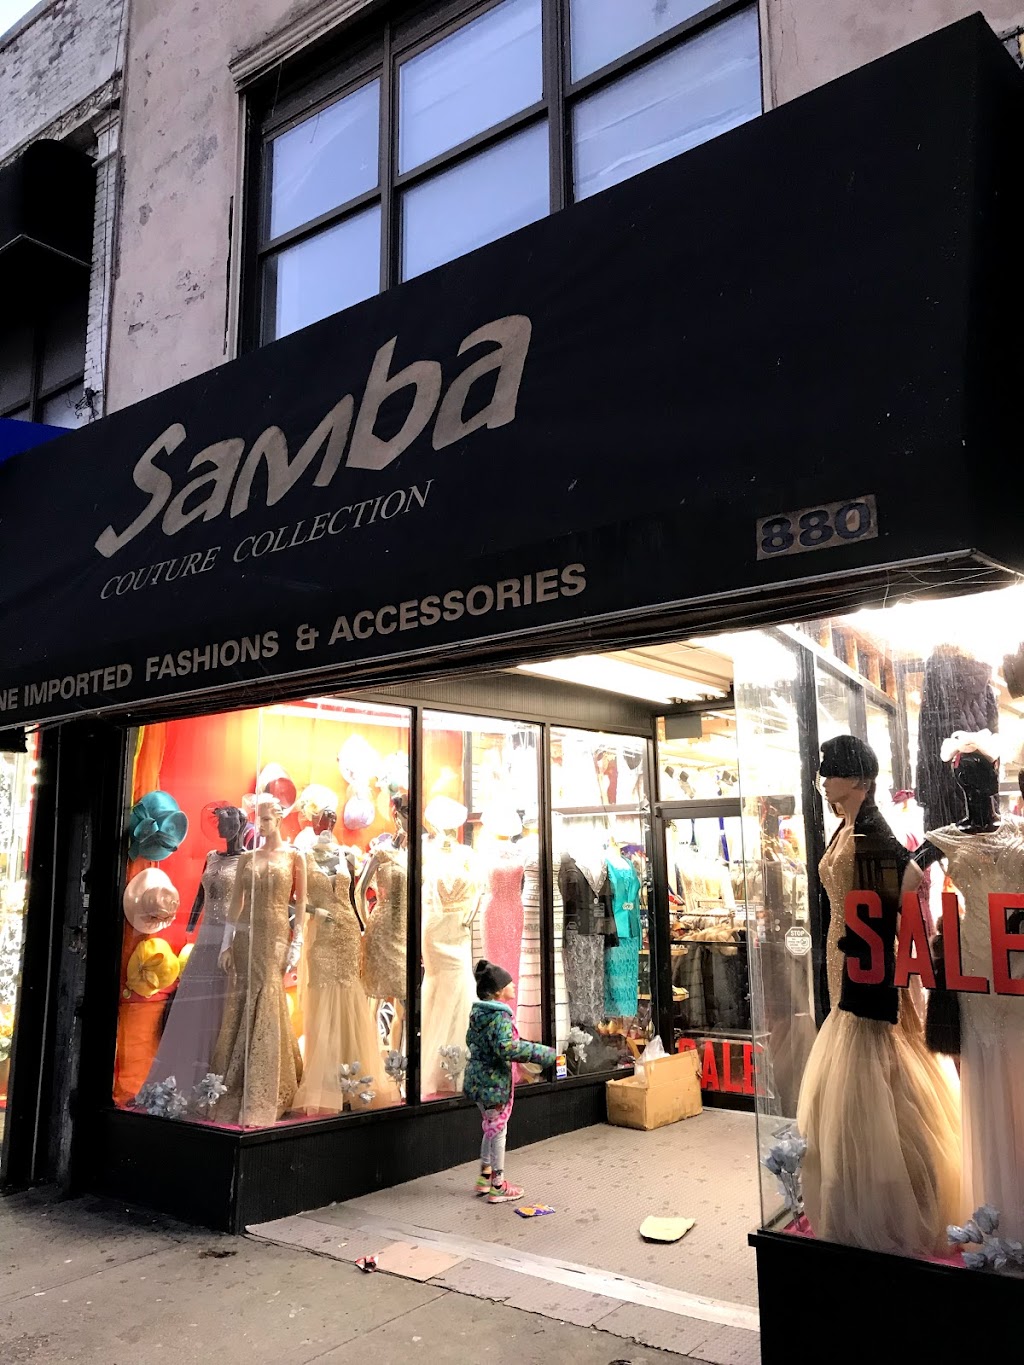 Samba Fashions | 880 Flatbush Ave, Brooklyn, NY 11226 | Phone: (718) 287-3077